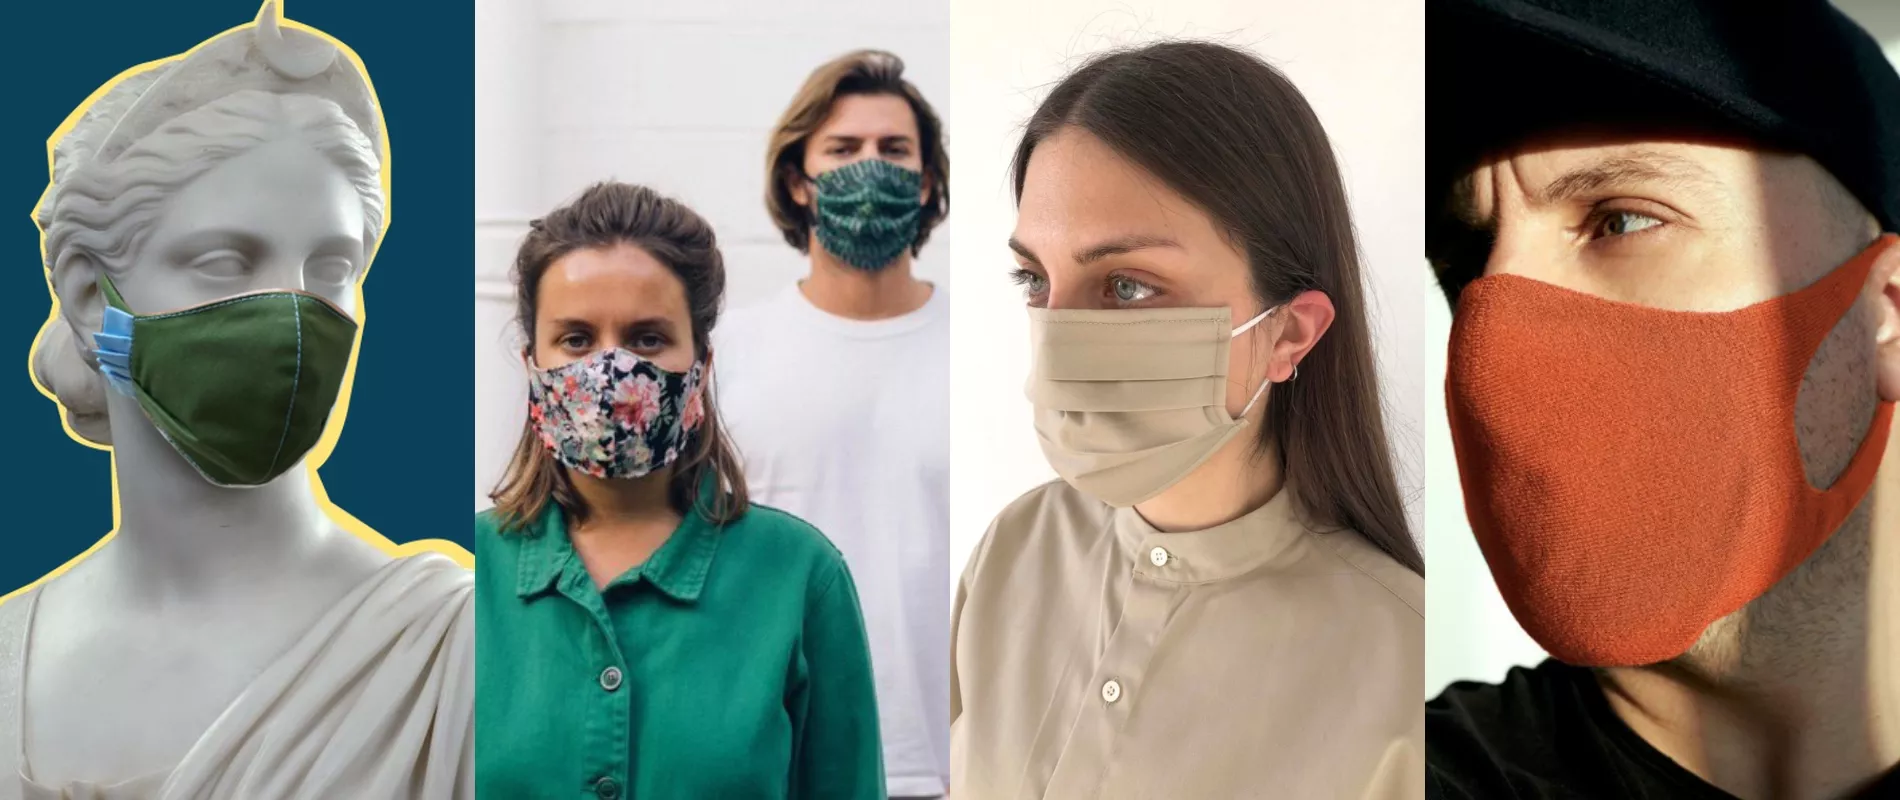 Filthy egg Digital Nouă idei creative pentru a face masca mai puțin amenințătoare | Smart Radio